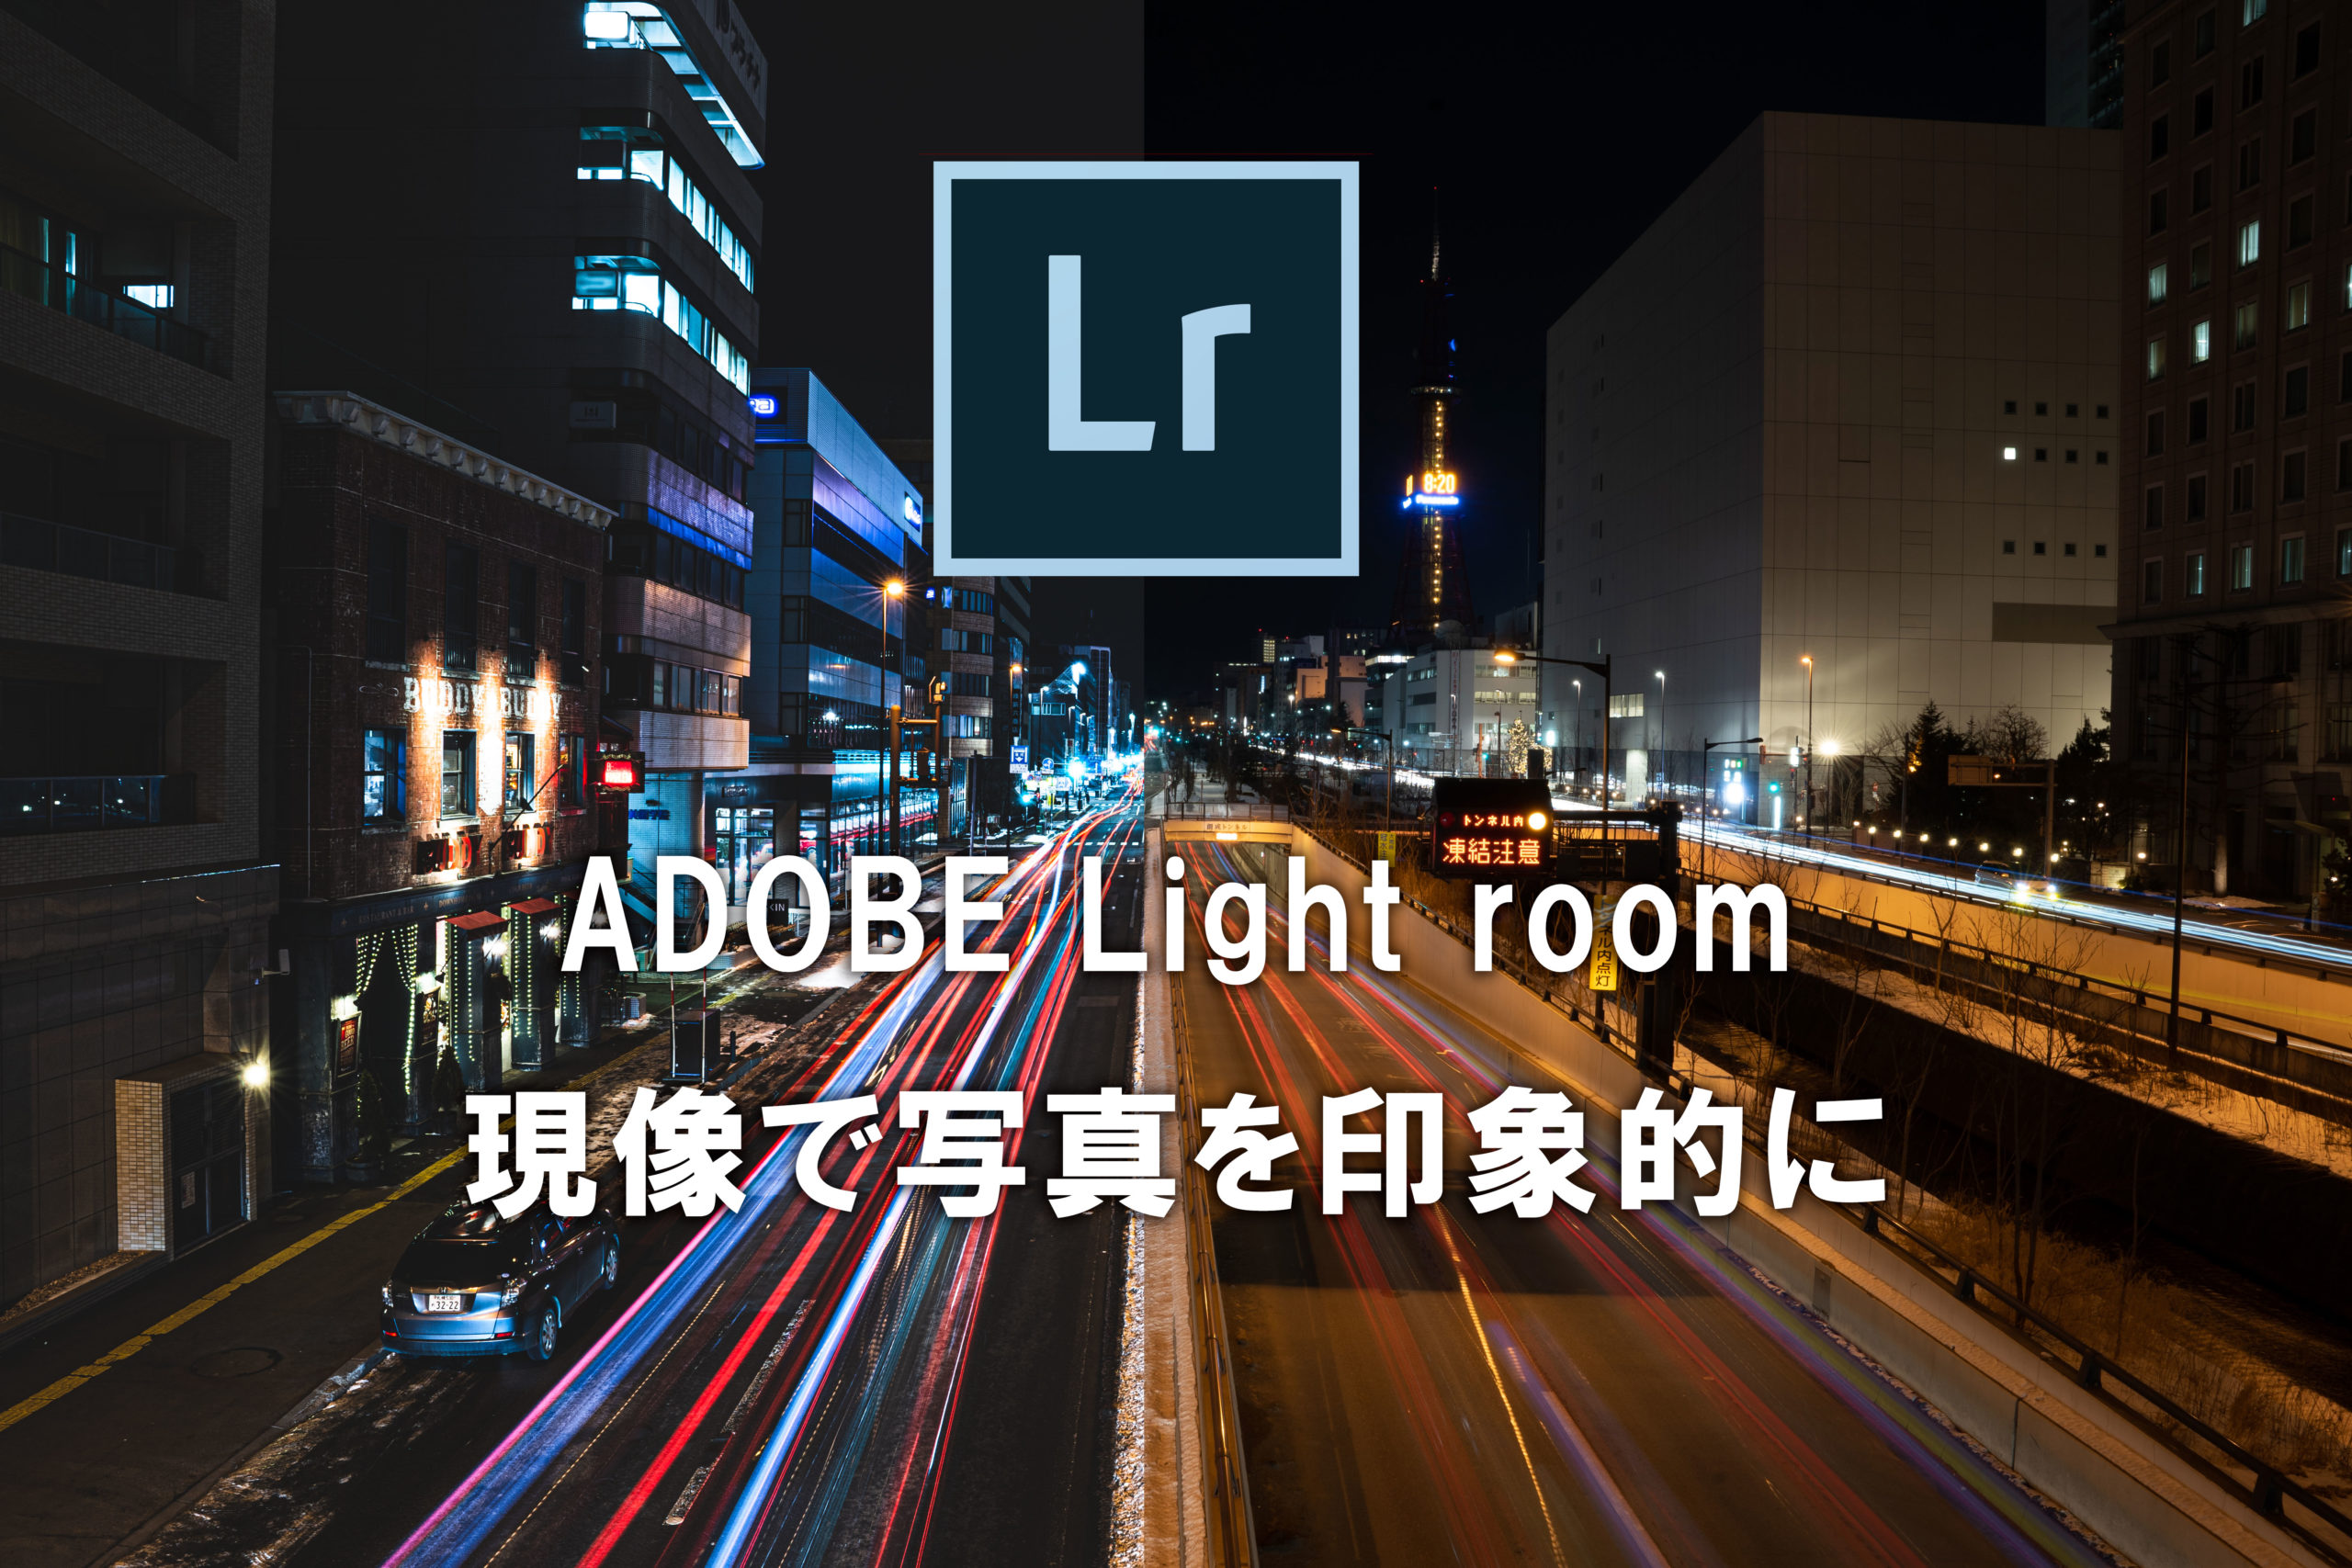 lightroomを使った現像解説ブログ